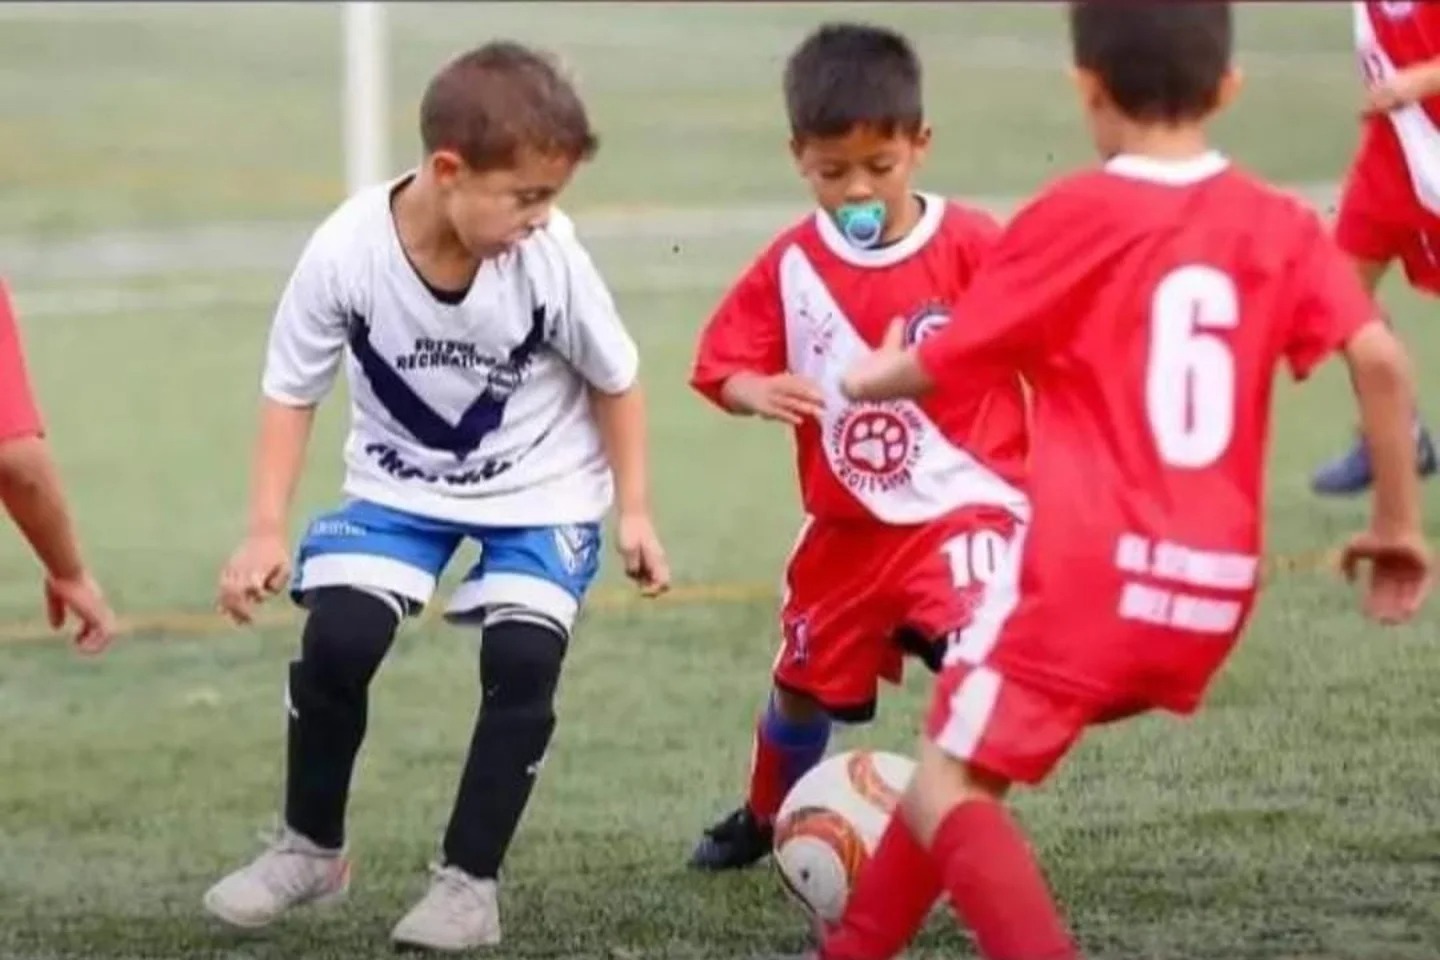 La historia de Ulises Cáceres, el niño de 6 años de Fuerte Apache que se hizo viral por jugar al fútbol con chupete